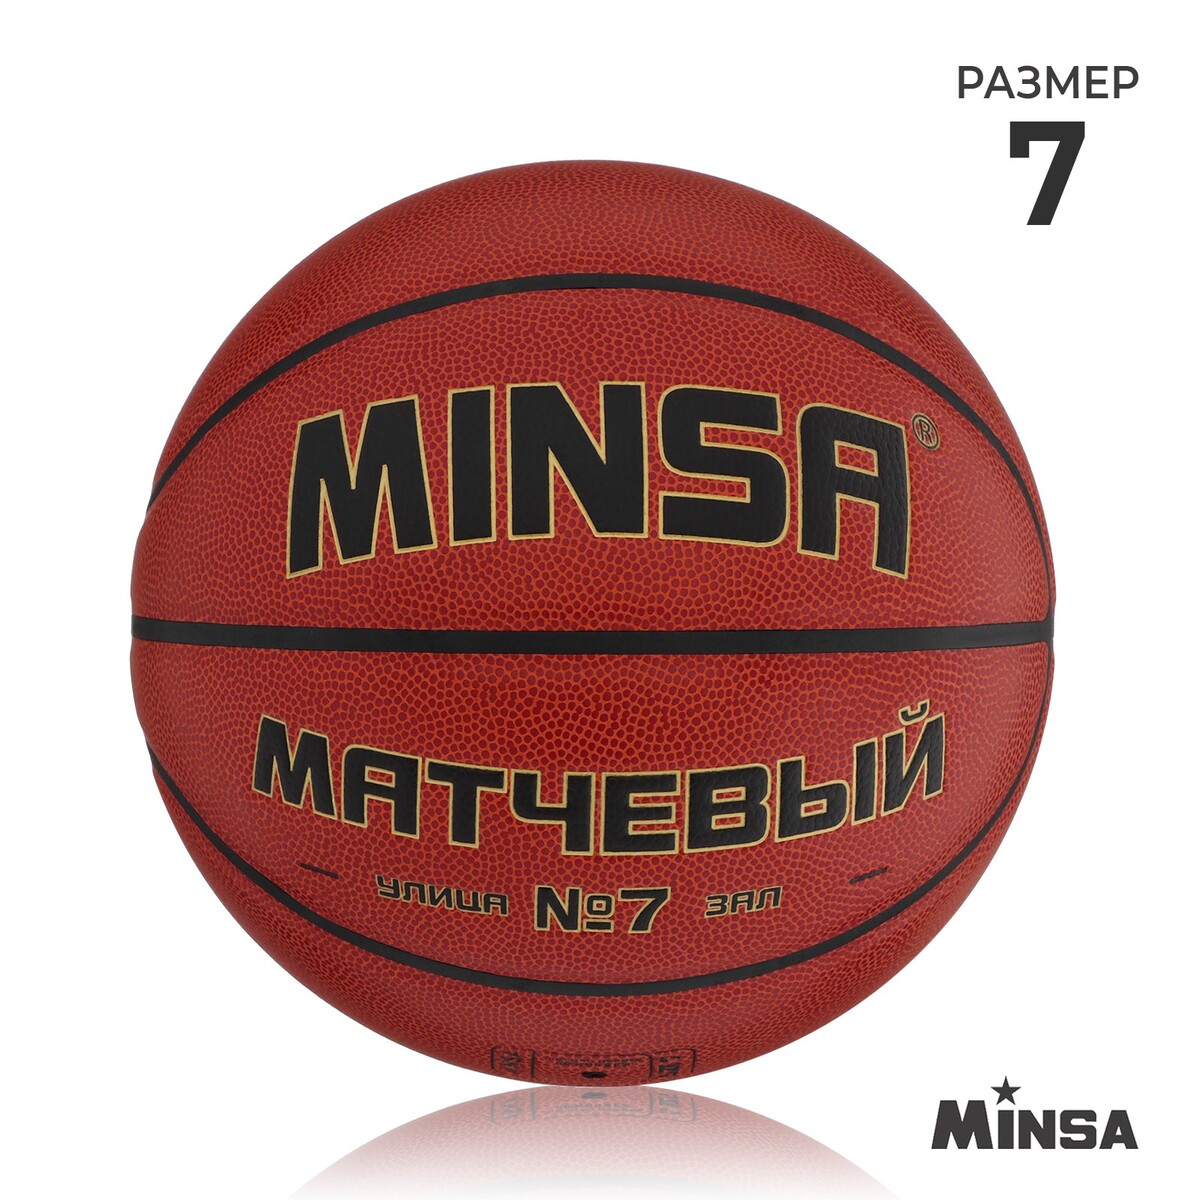 Баскетбольный мяч minsa, матчевый, microfiber pu, клееный, 8 панелей, р. 7 мяч баскетбольный minsa sport пвх клееный 8 панелей р 7